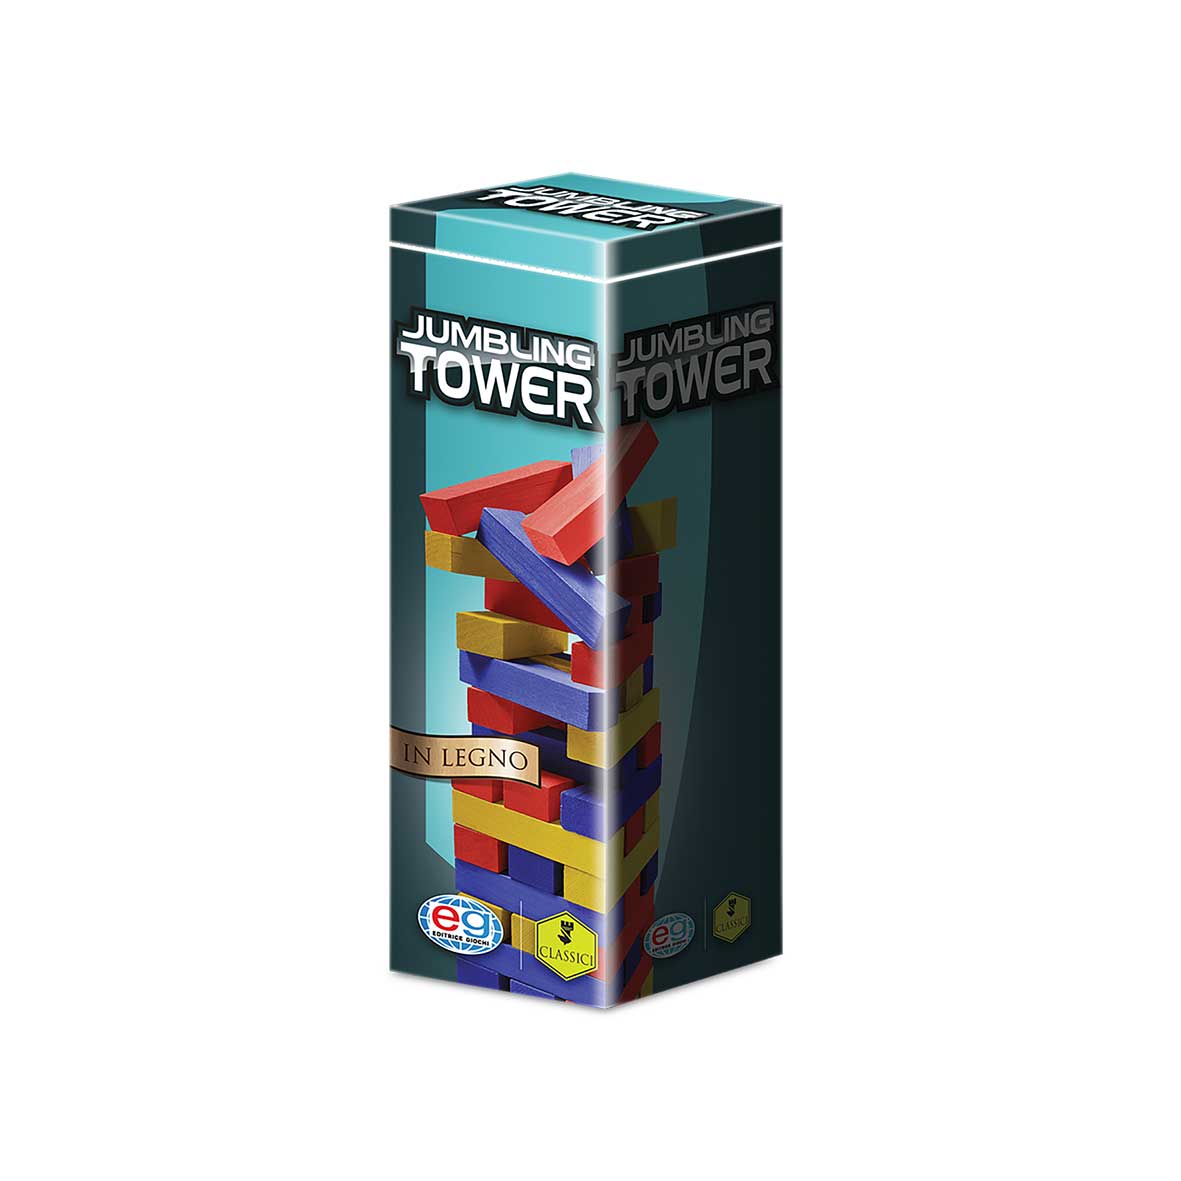 EG classici Jumbling Tower colorata in legno